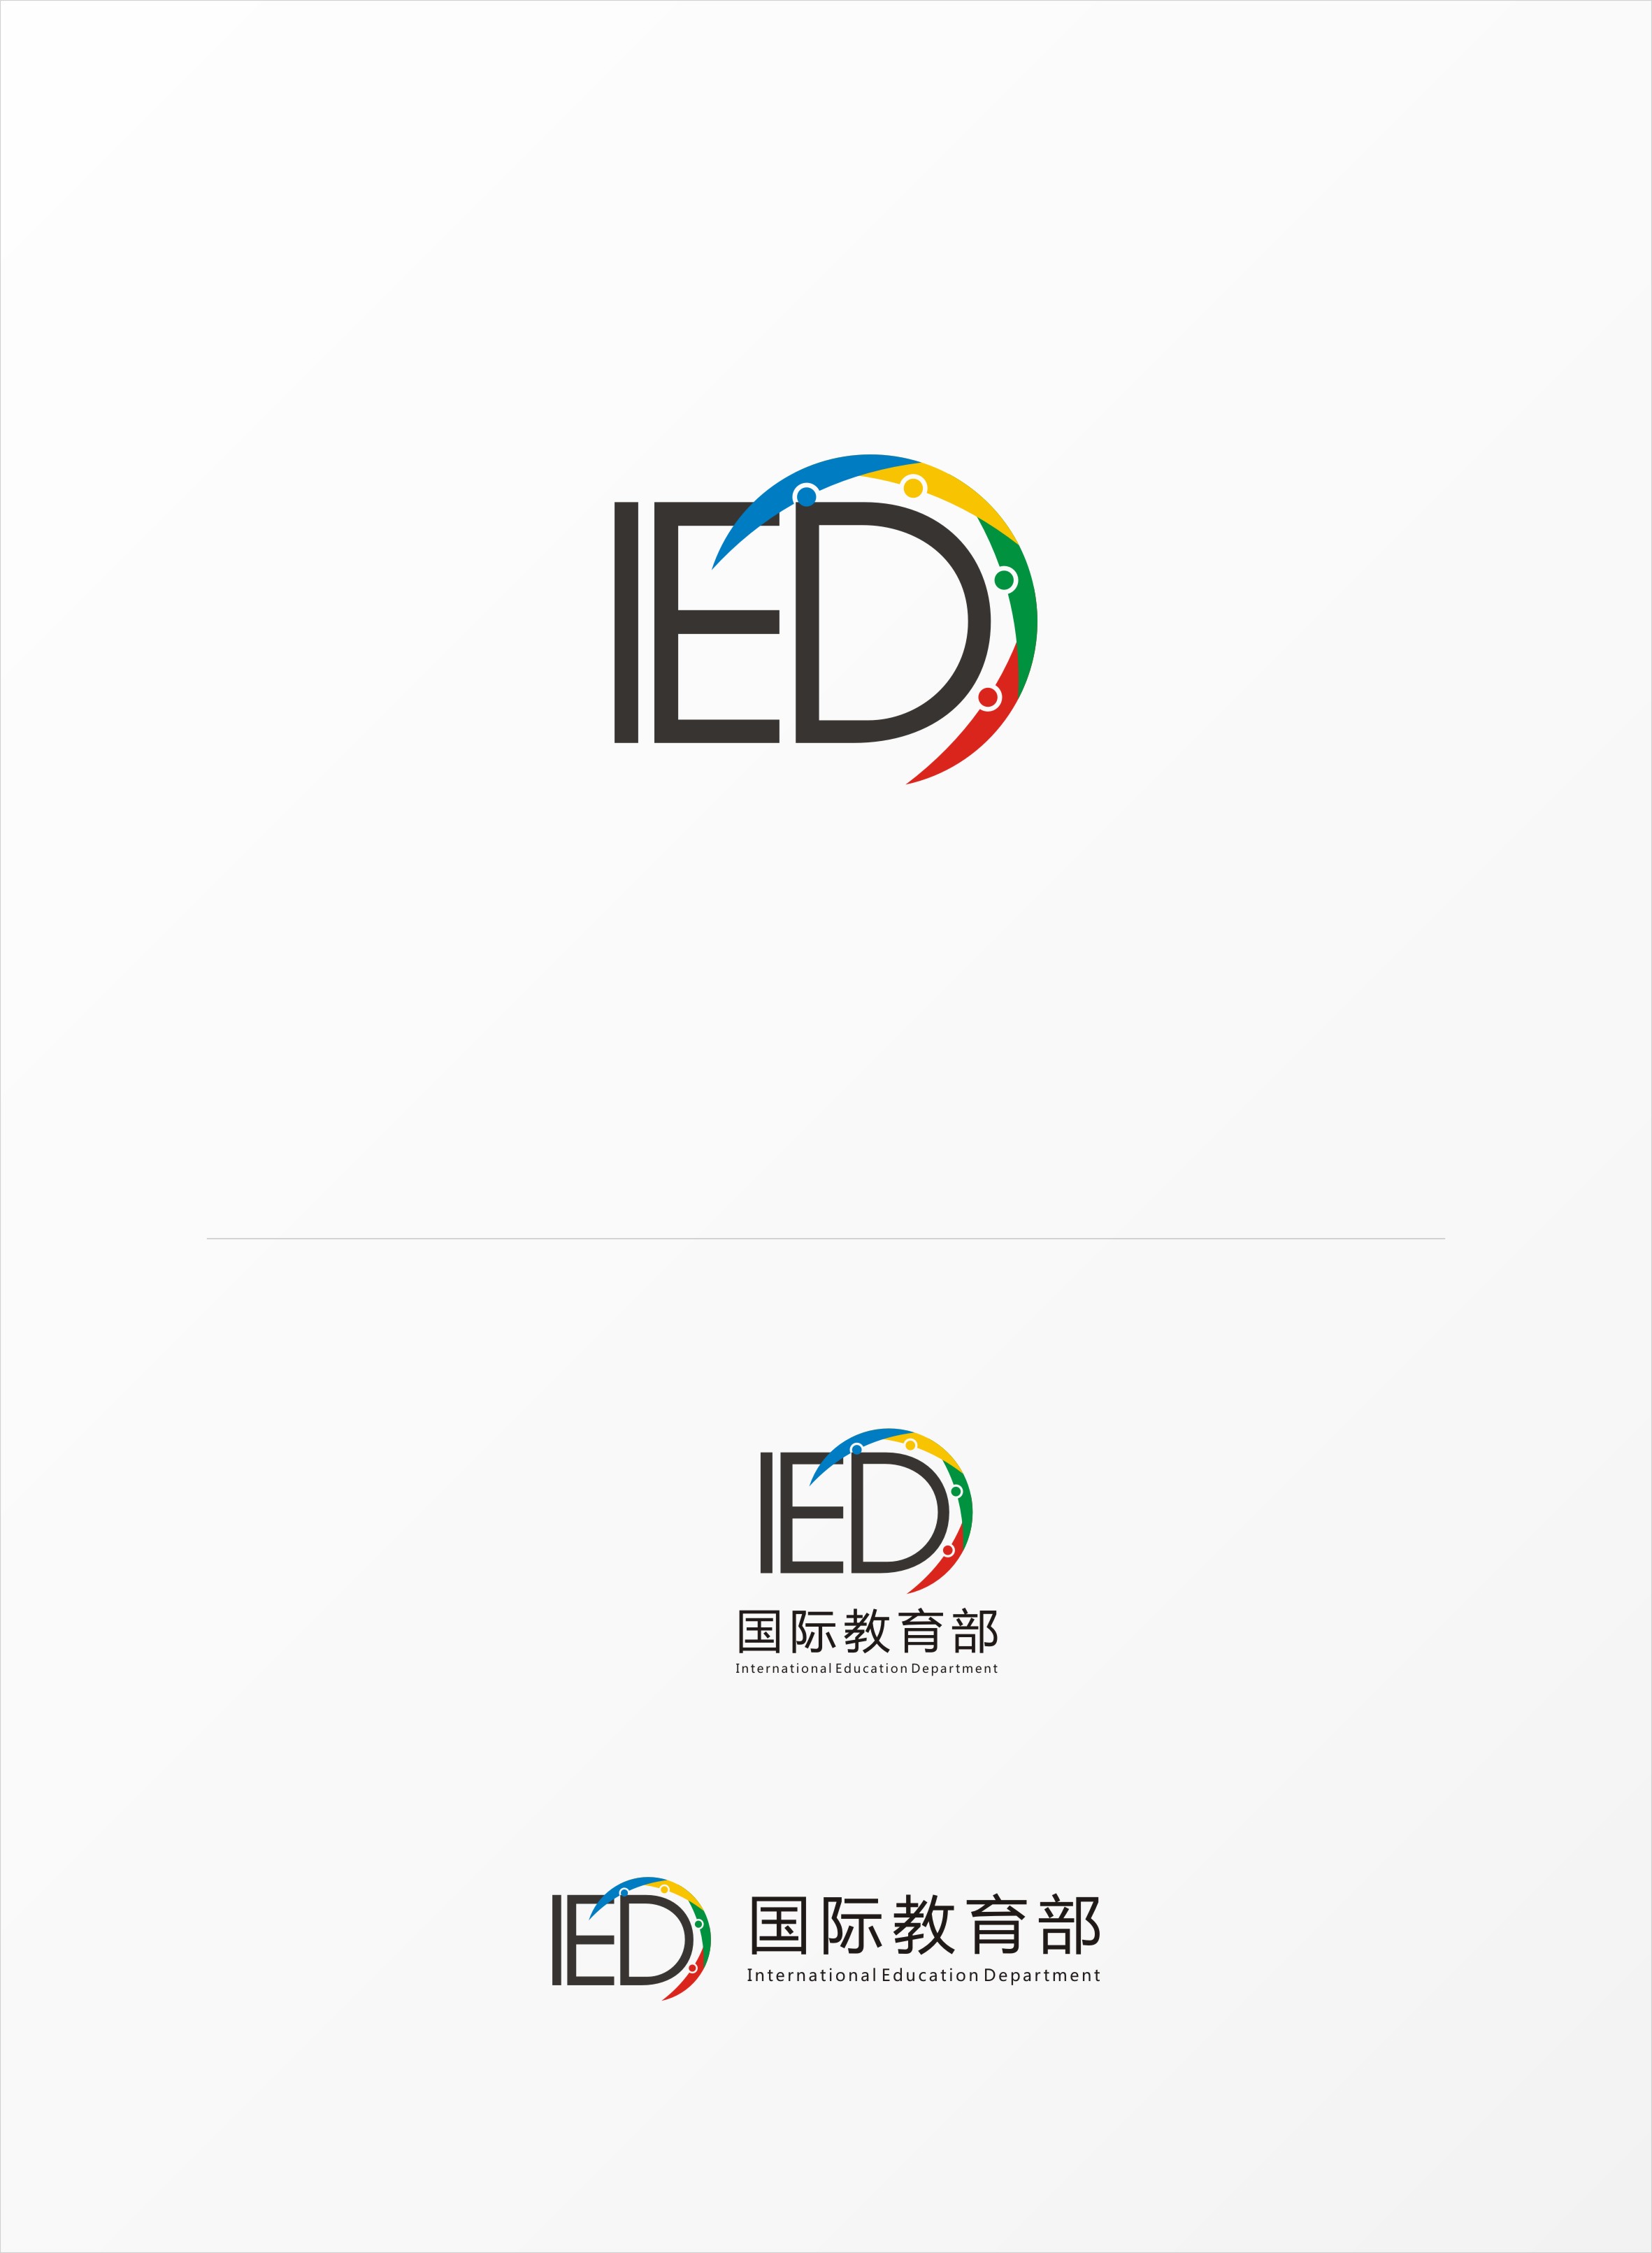 国际教育部logo设计